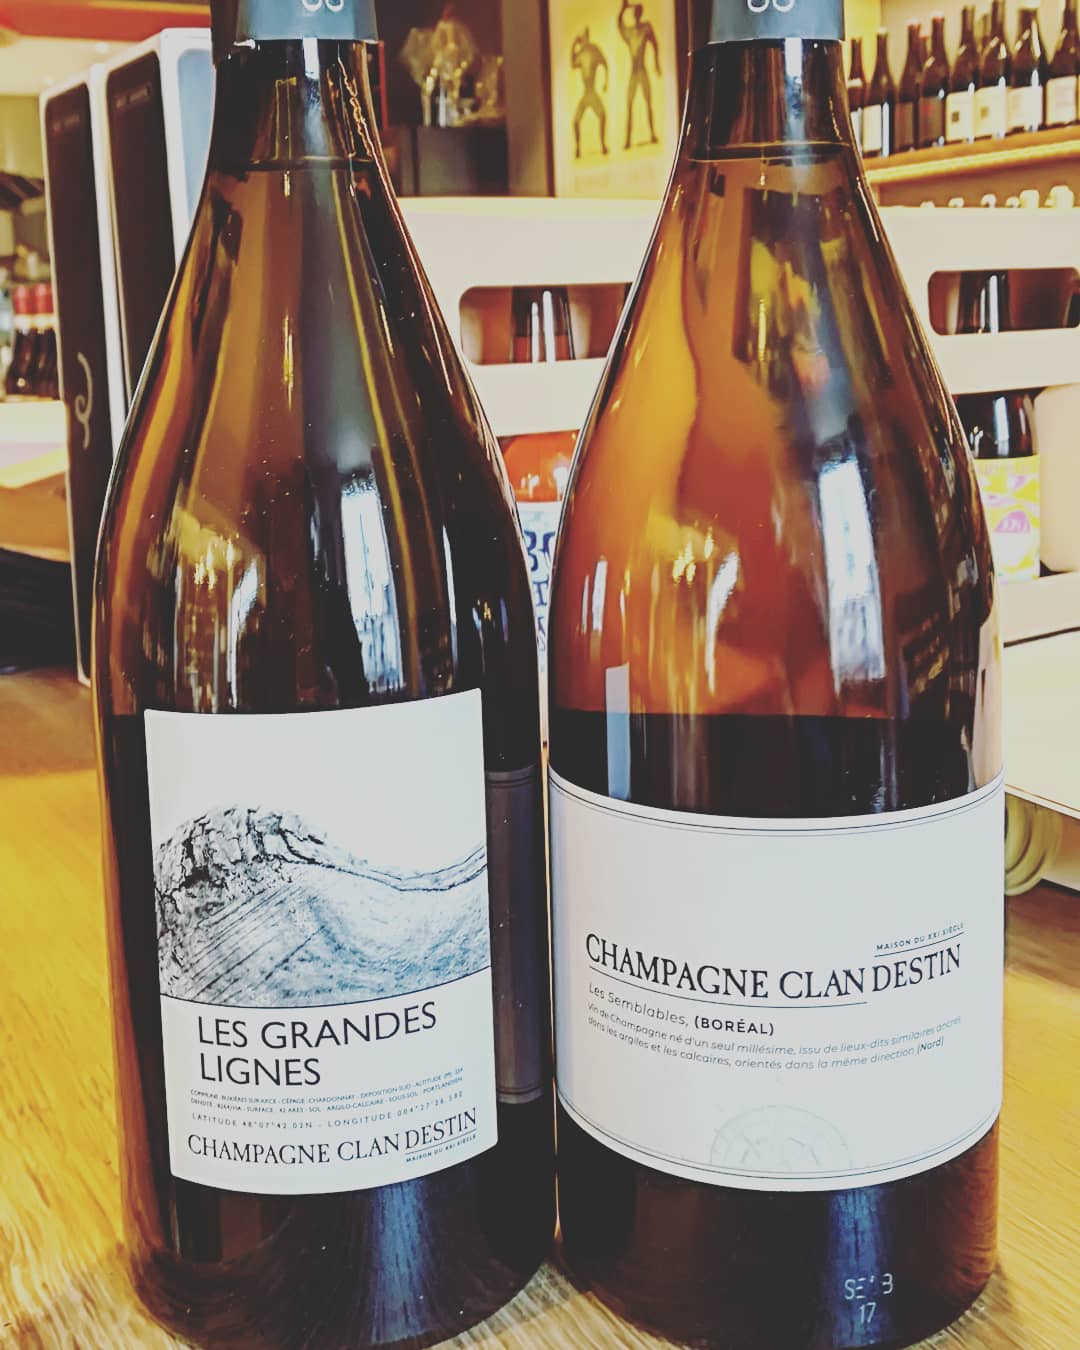 Beaux champagnes pour de belles fêtes 🍾.
.
.#champagne #champagneclandestin #benoitdoussot #lesgrandeslignes #chardonnay #lessemblables #pinotnoir #organicwine #wine #oldv #olieuditvin #tours